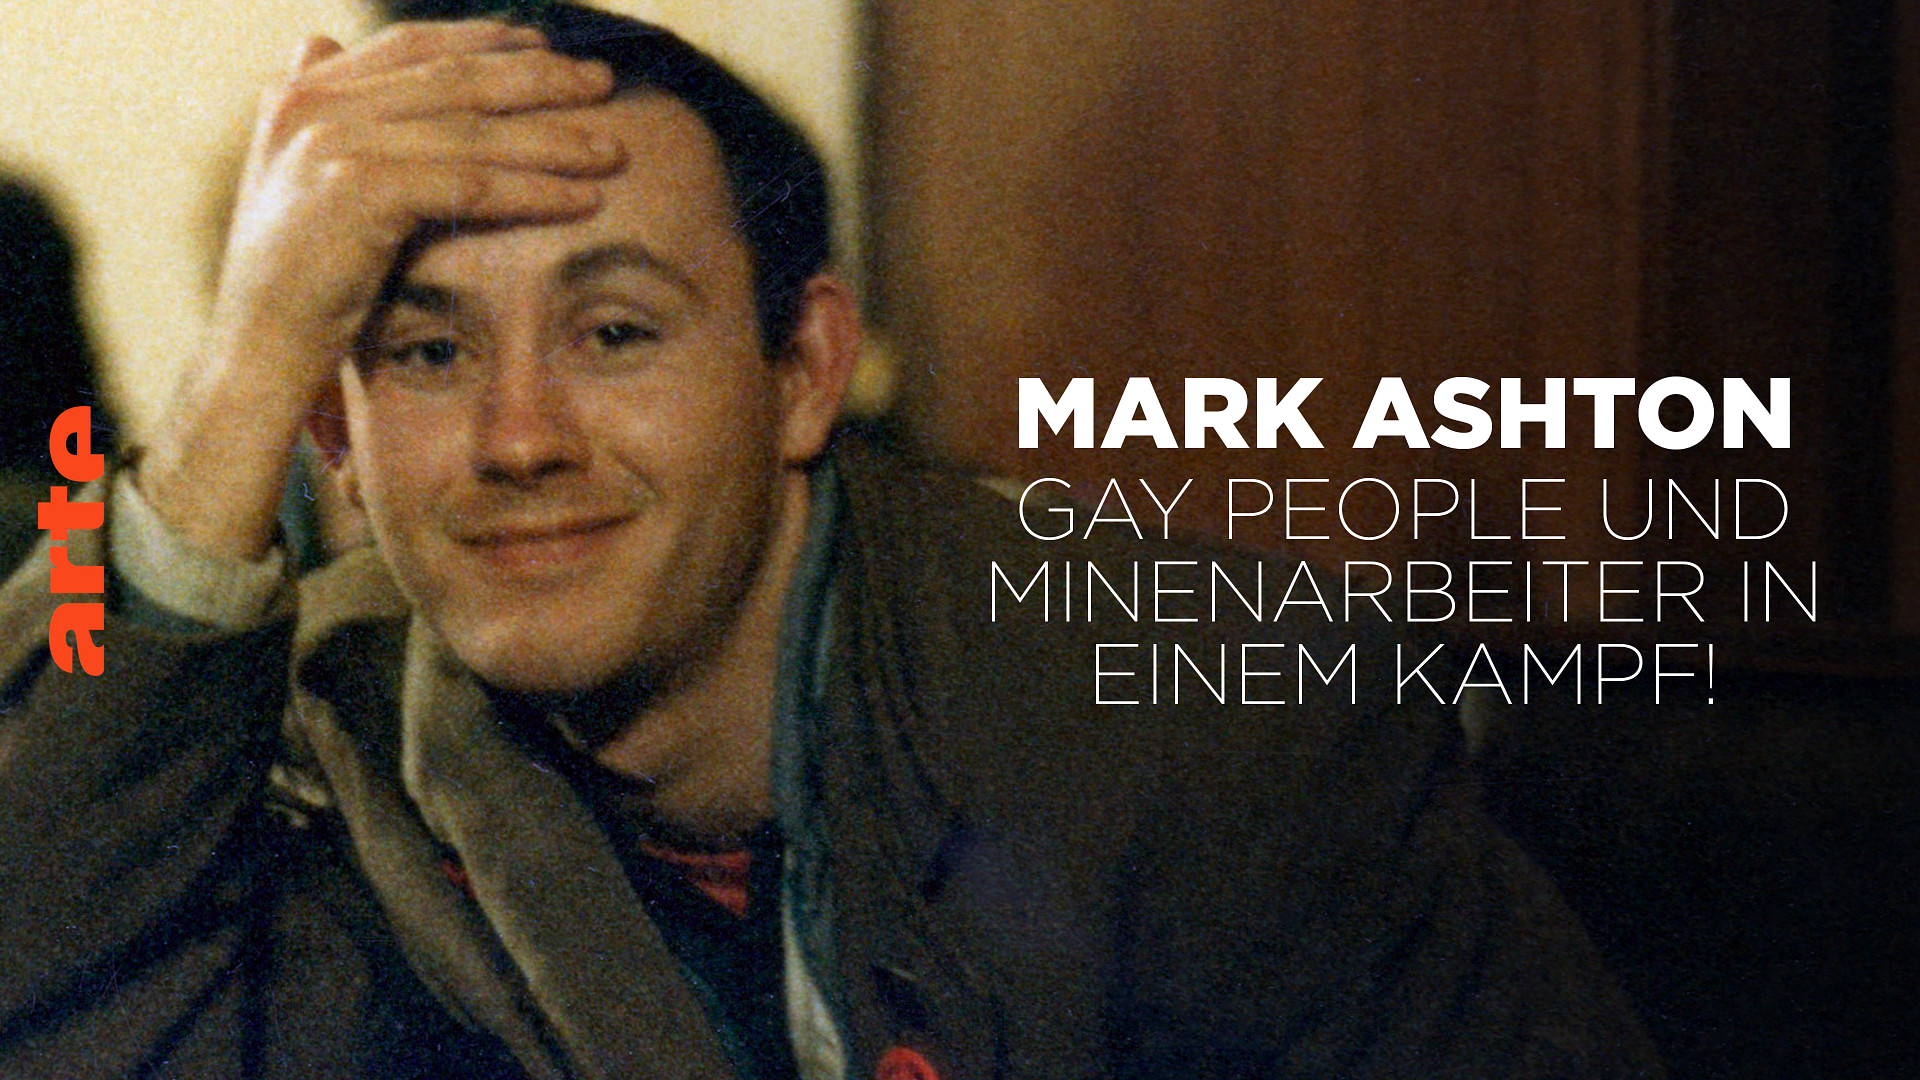 Mark Ashton: Gay People und Minenarbeiter in einem Kampf!